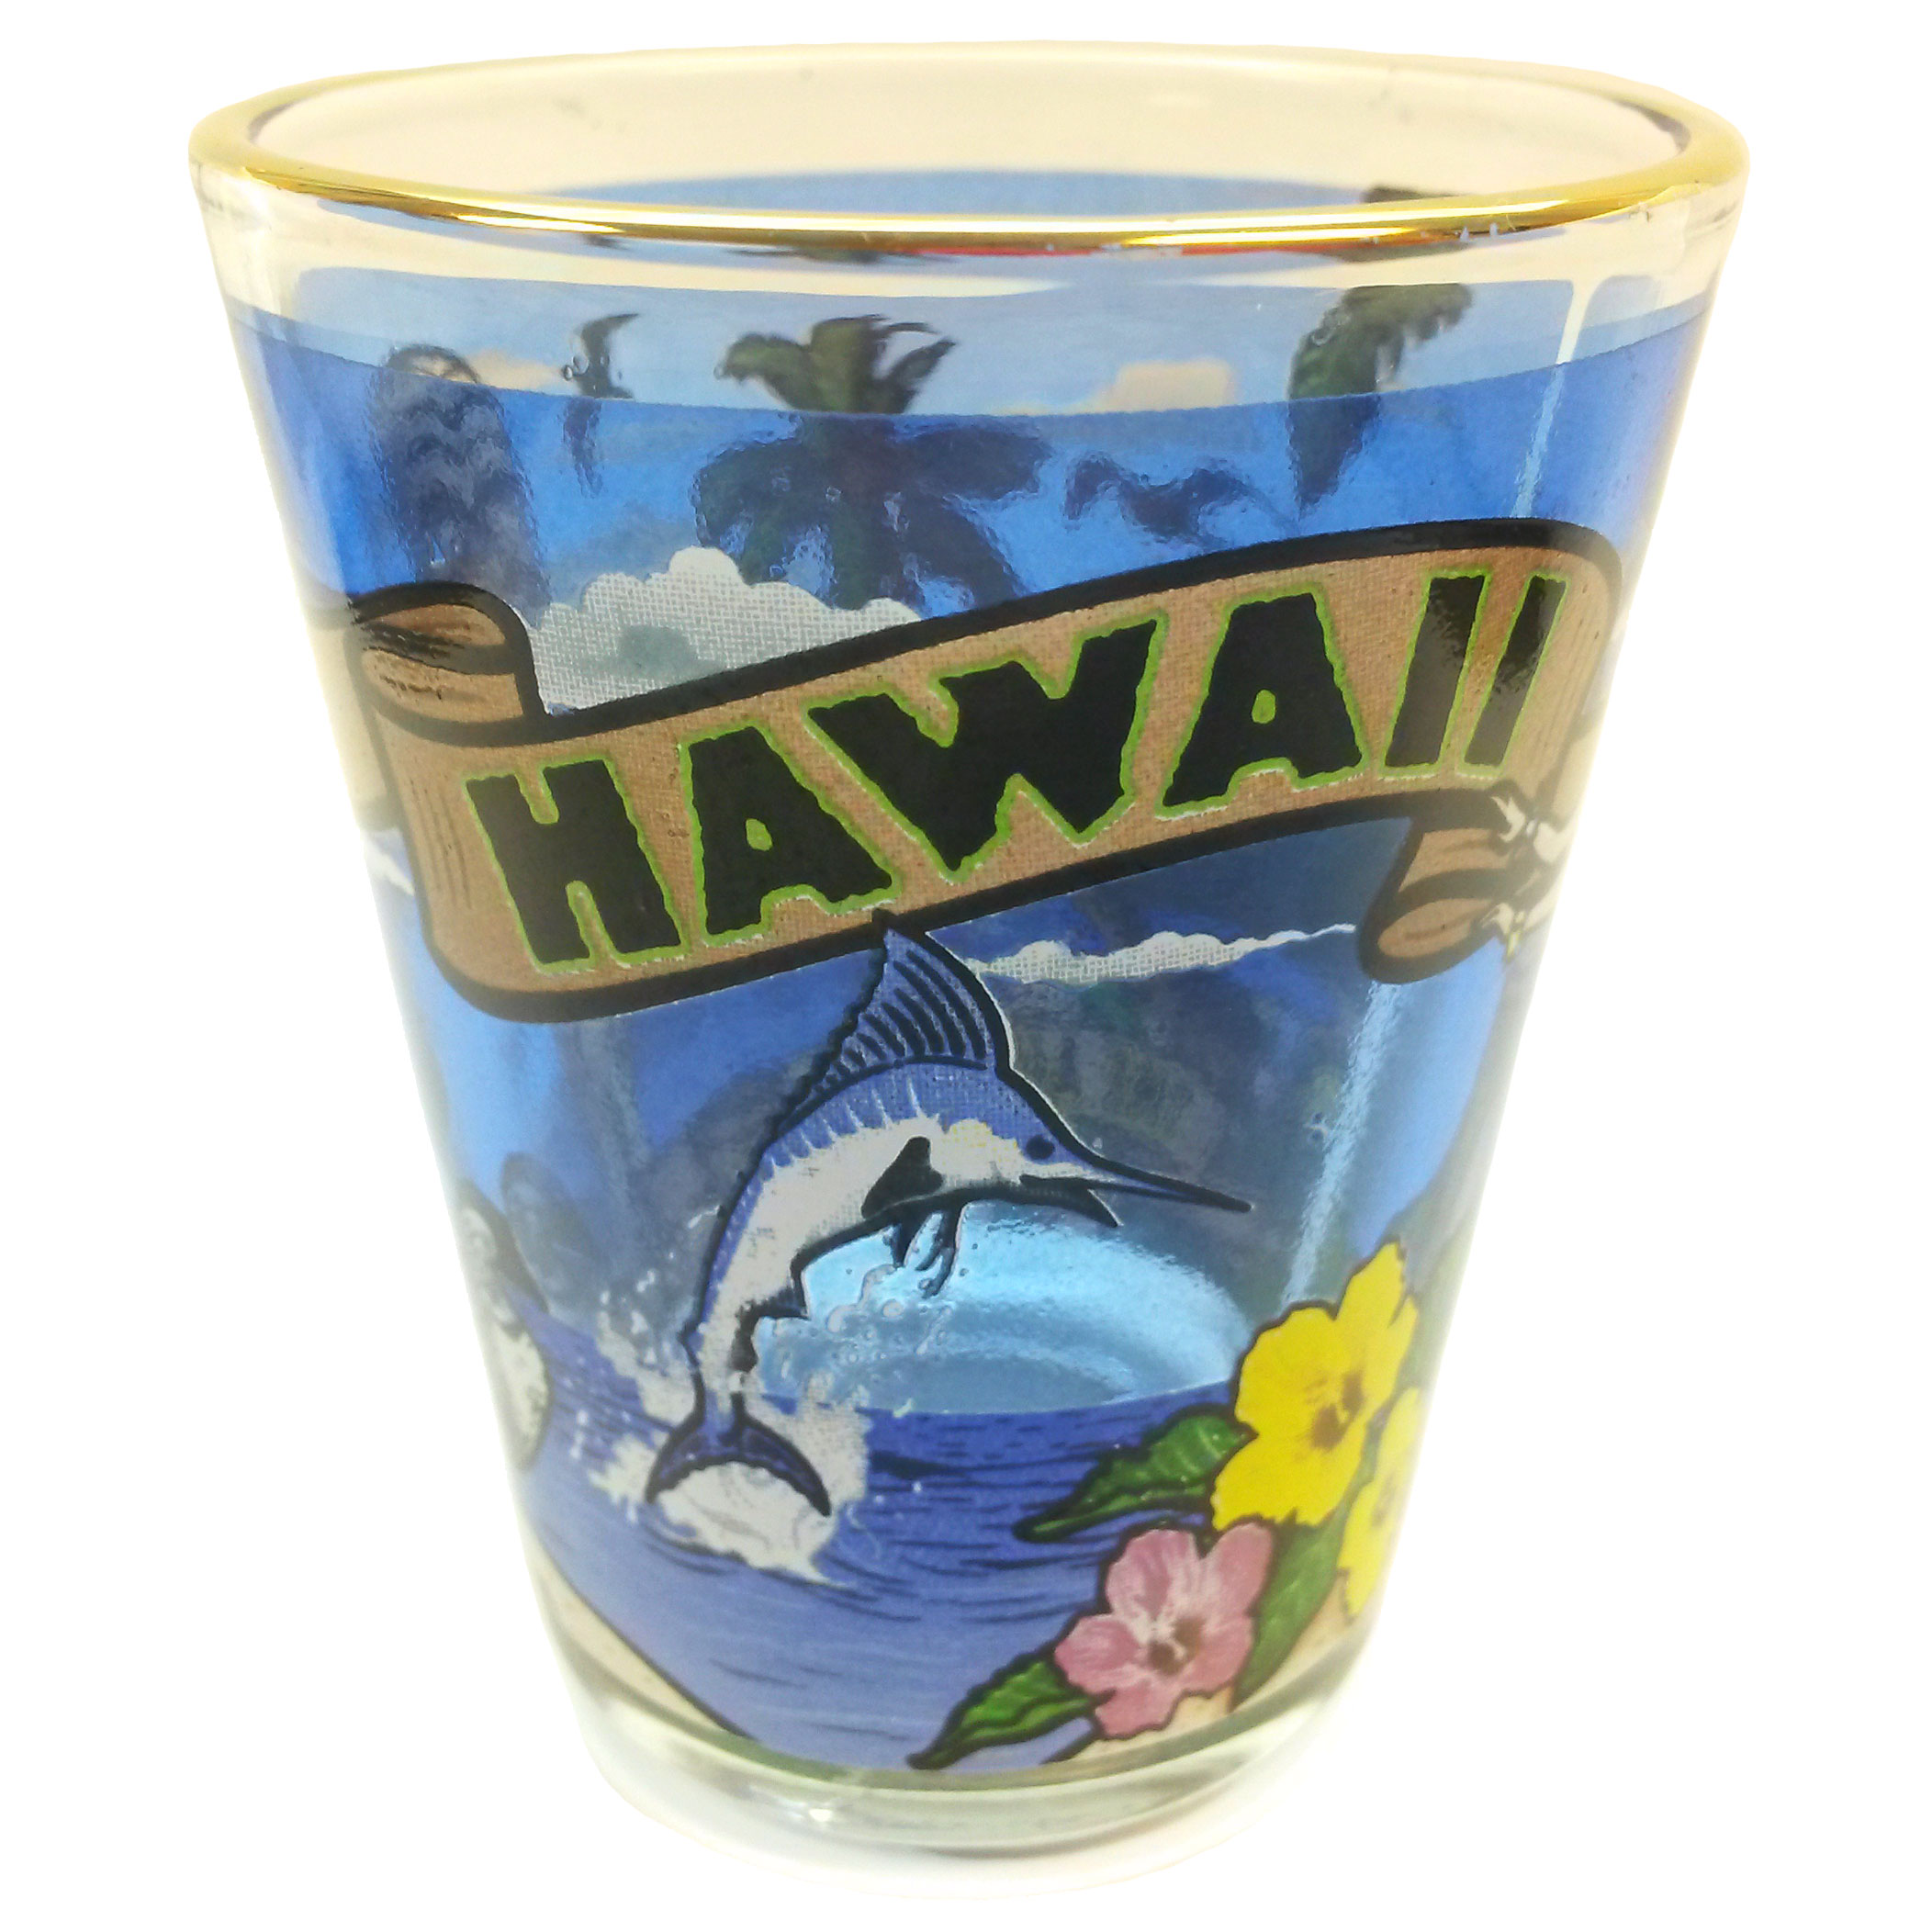 HAWAII SHOT – Official Collectors Club